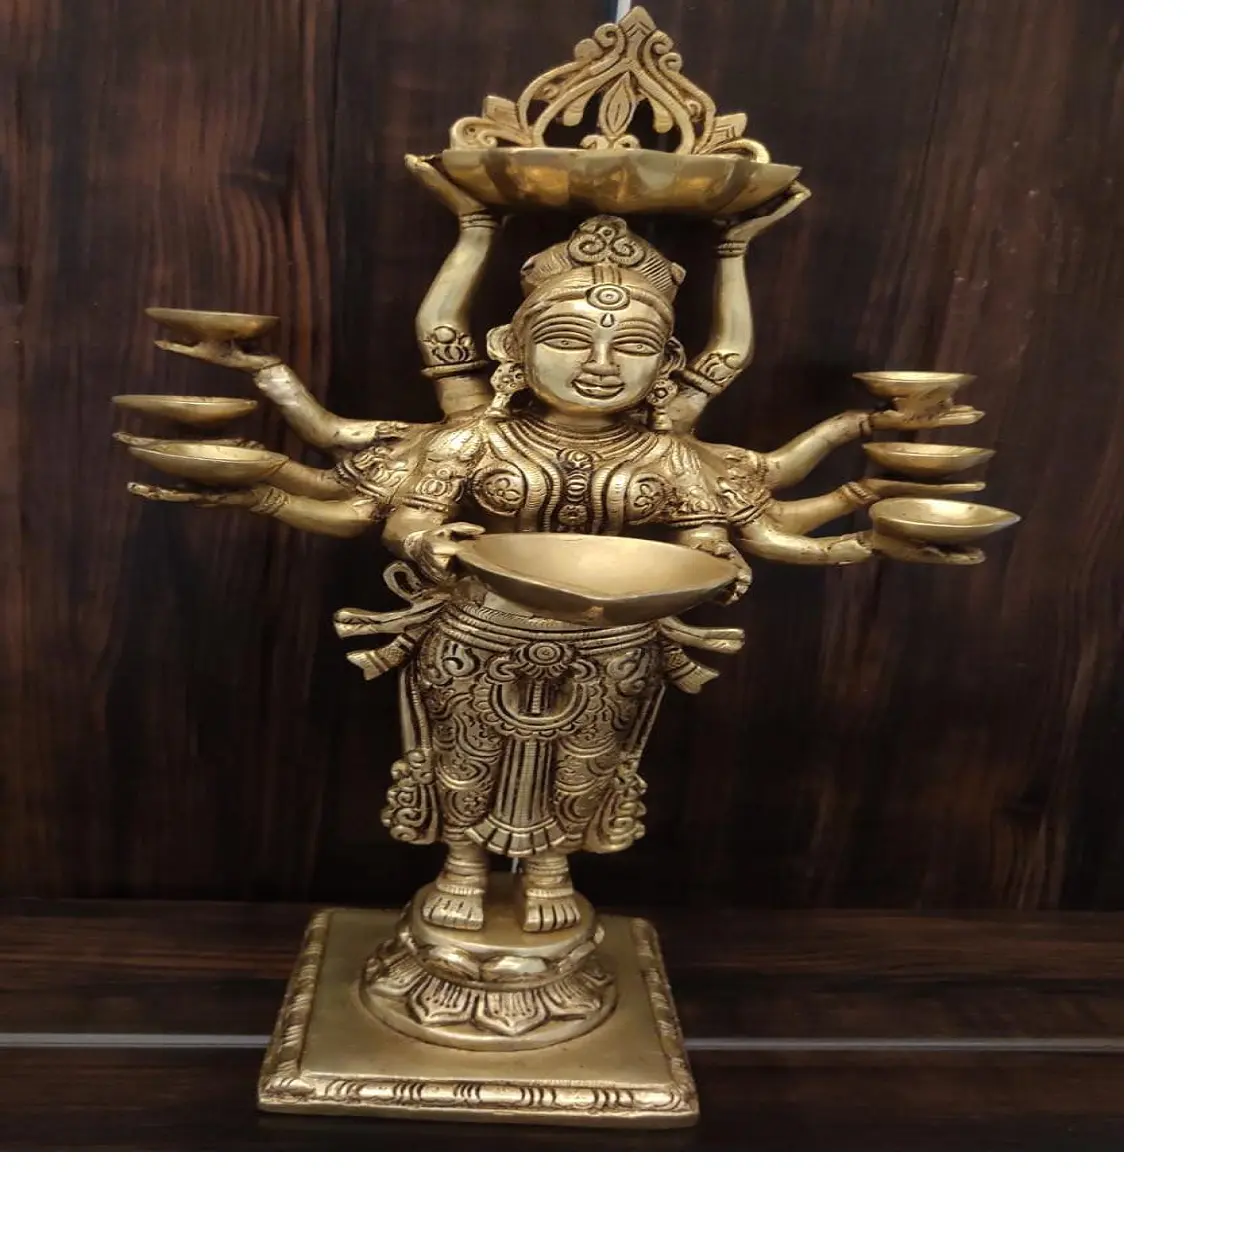 Maßge schneiderte sehr attraktive Bronzestatuen indischer Göttinnen, die als Öllampen für die Heim dekoration verwendet werden können